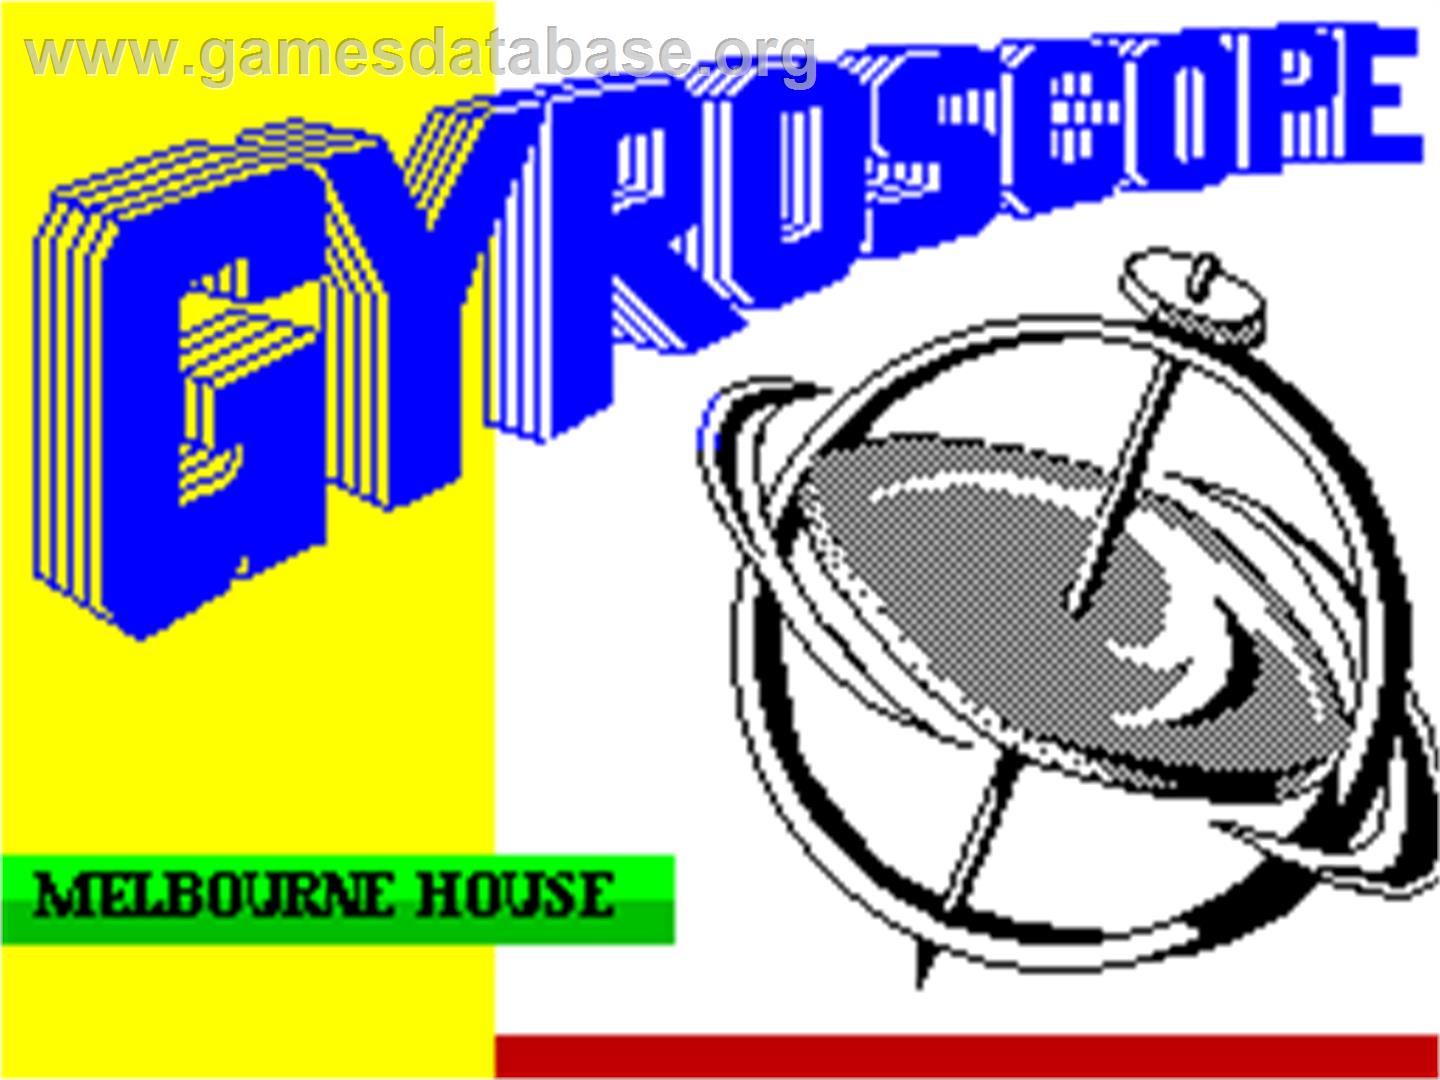 Gyroscope - Sinclair ZX Spectrum - Artwork - Title Screen